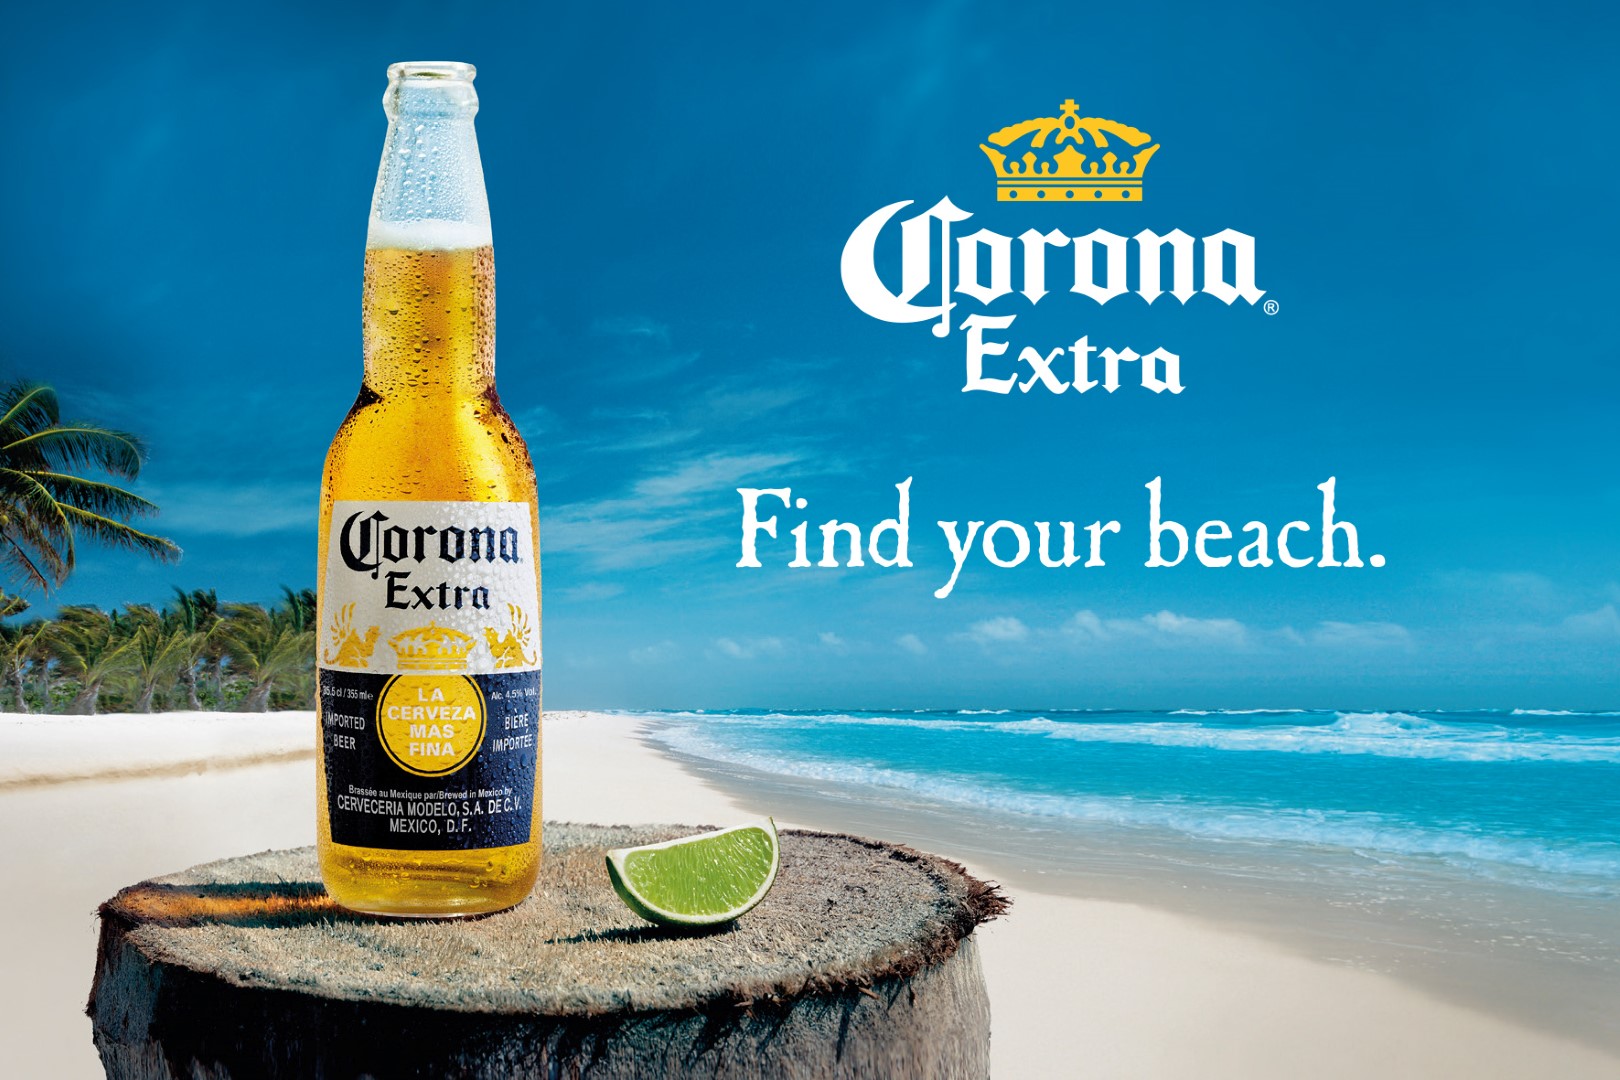 Corona Extra birra: la nuova campagna estiva Find your beach